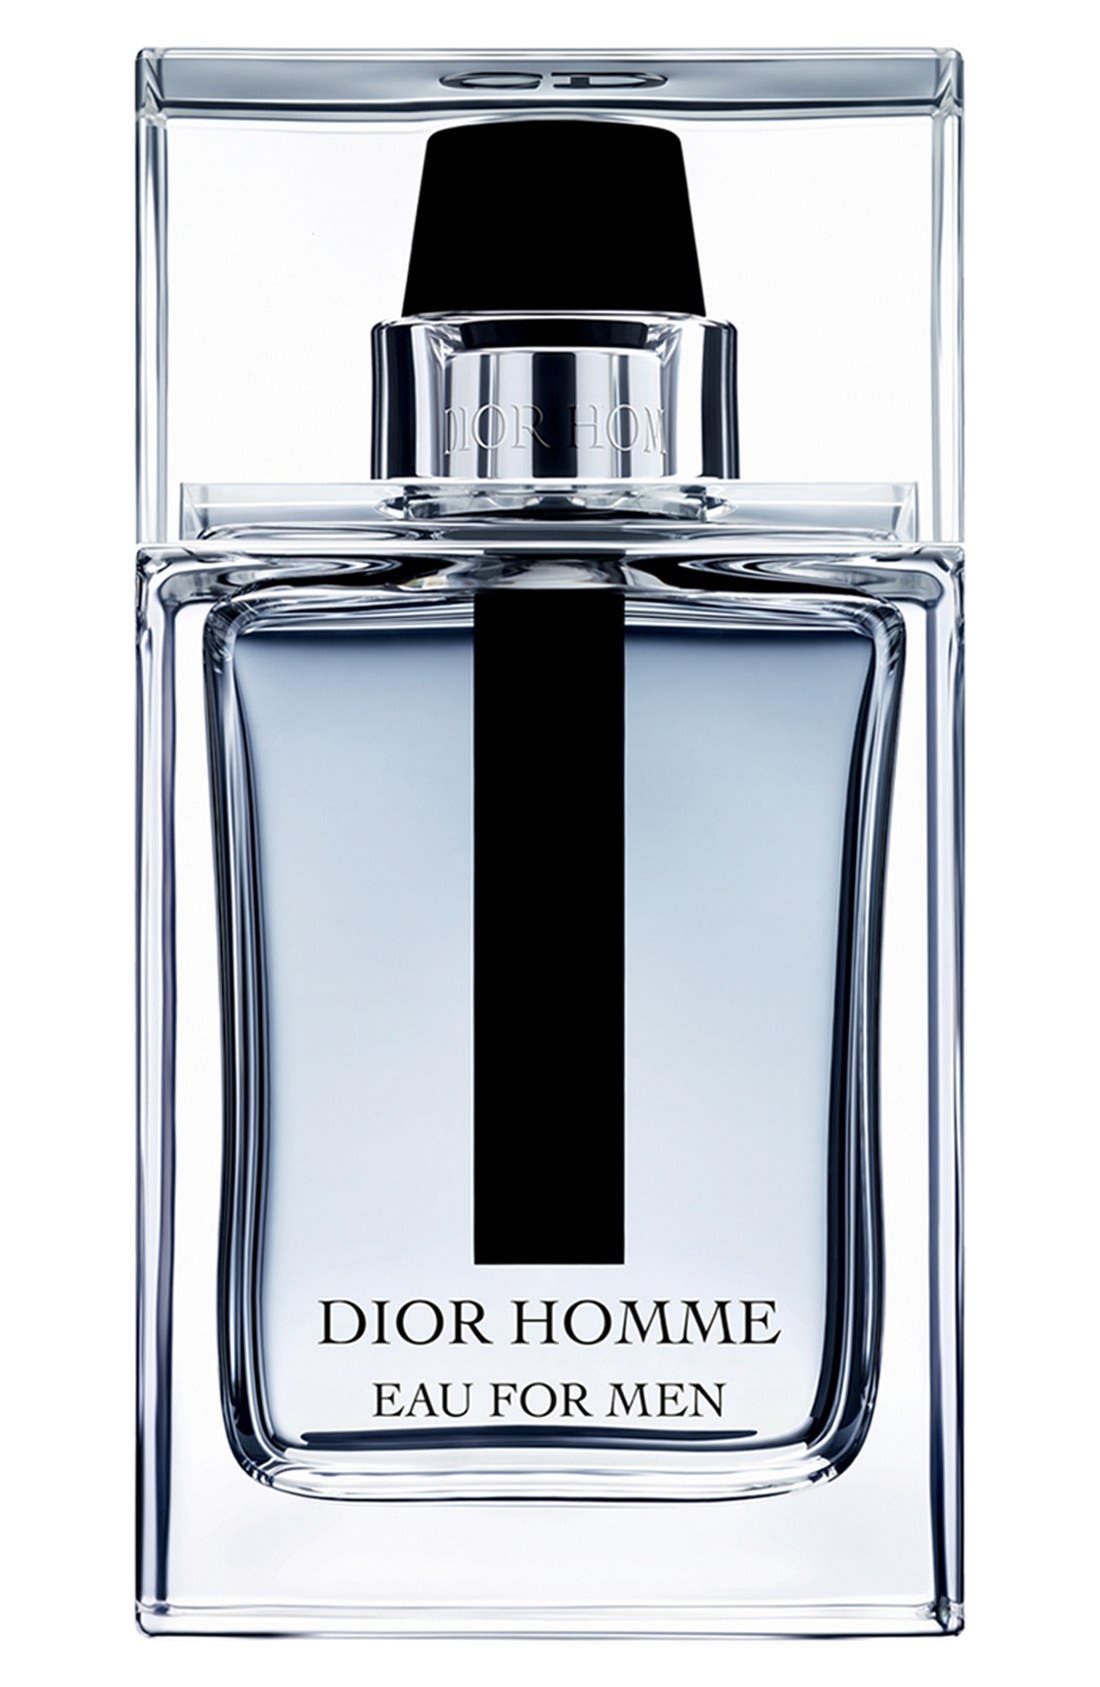 EAN 3348901215930 product image for Dior Homme Eau for Men Eau de Toilette at Nordstrom, Size 3.4 Oz | upcitemdb.com